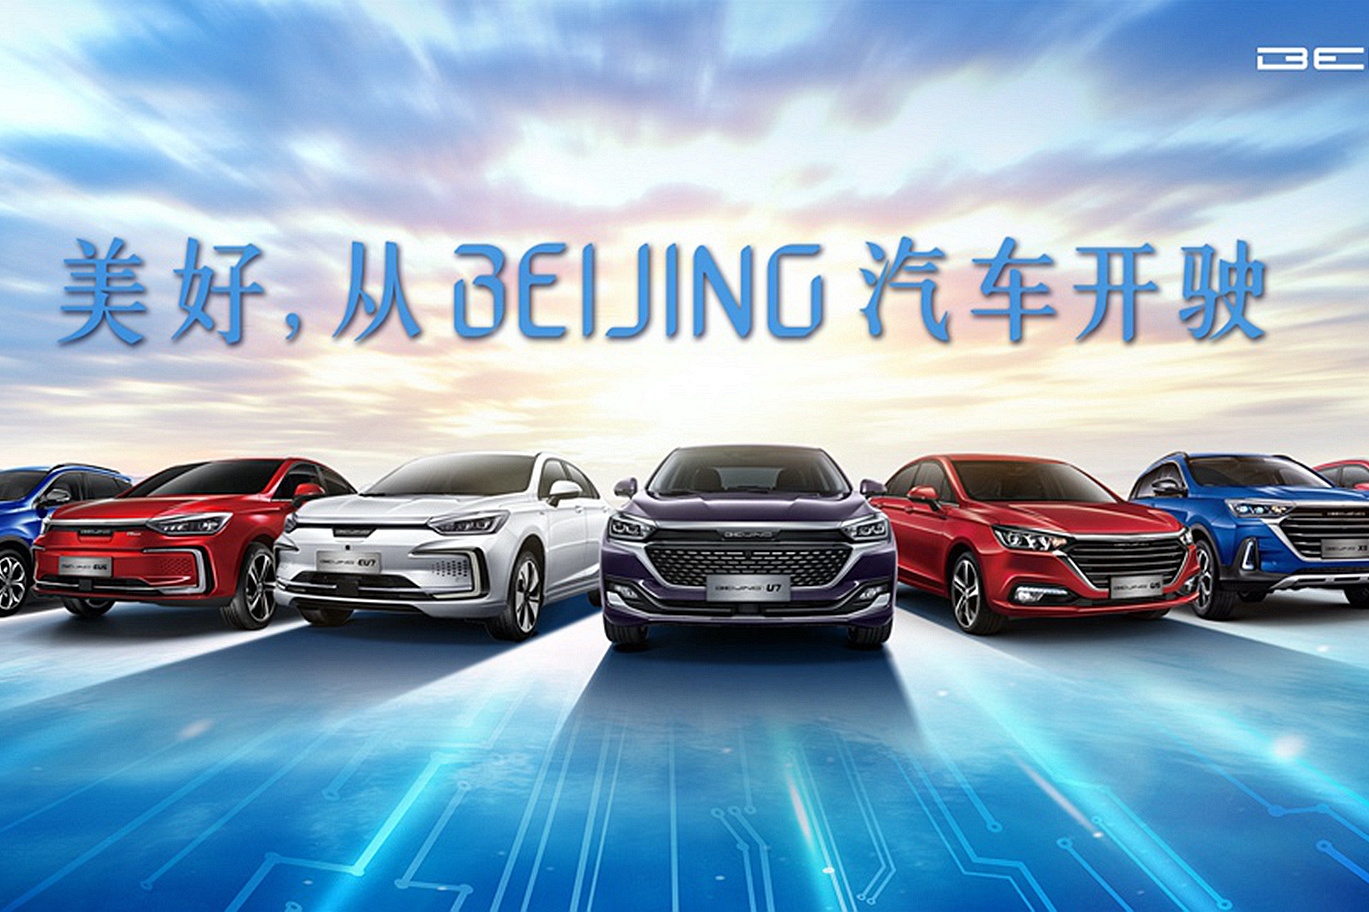 BEIJING品牌正式定名BEIJING汽车 新车10万起